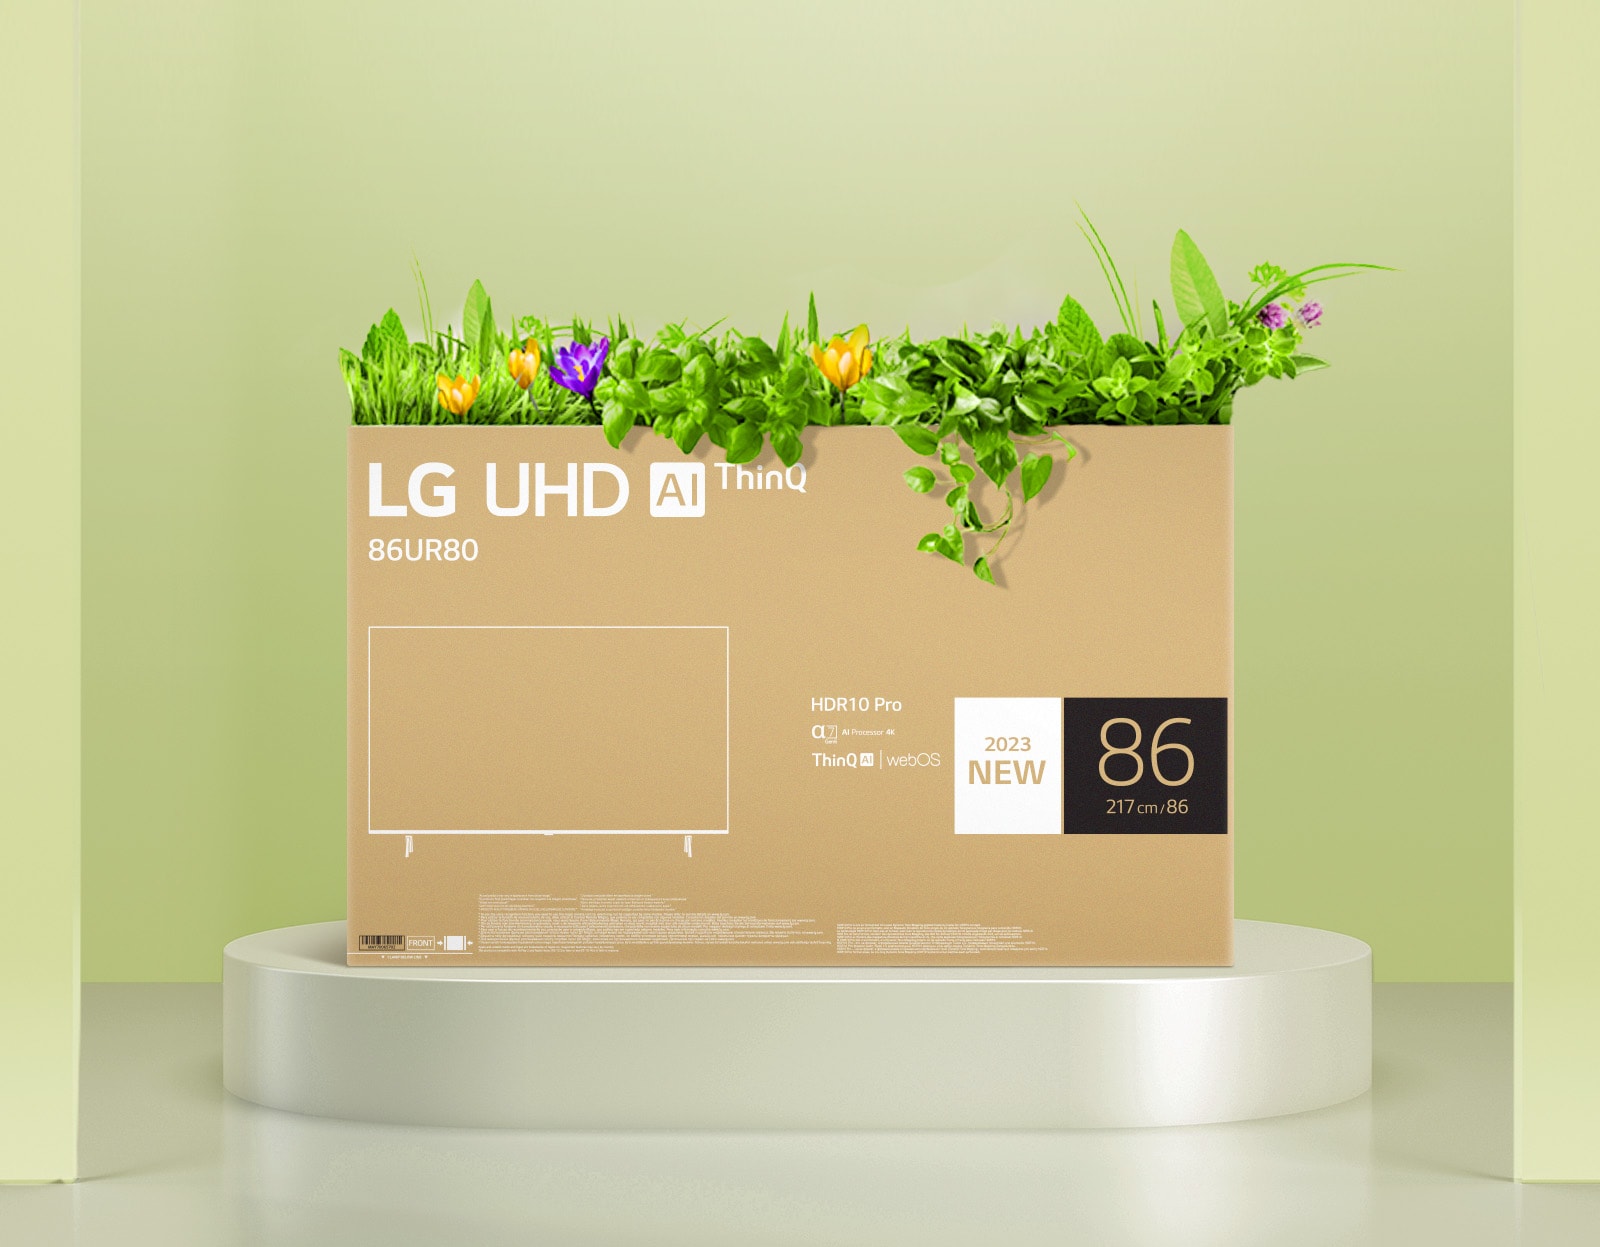 Gėlių dėžė, pagaminta naudojant perdirbtą LG UHD televizoriaus pakuotę.